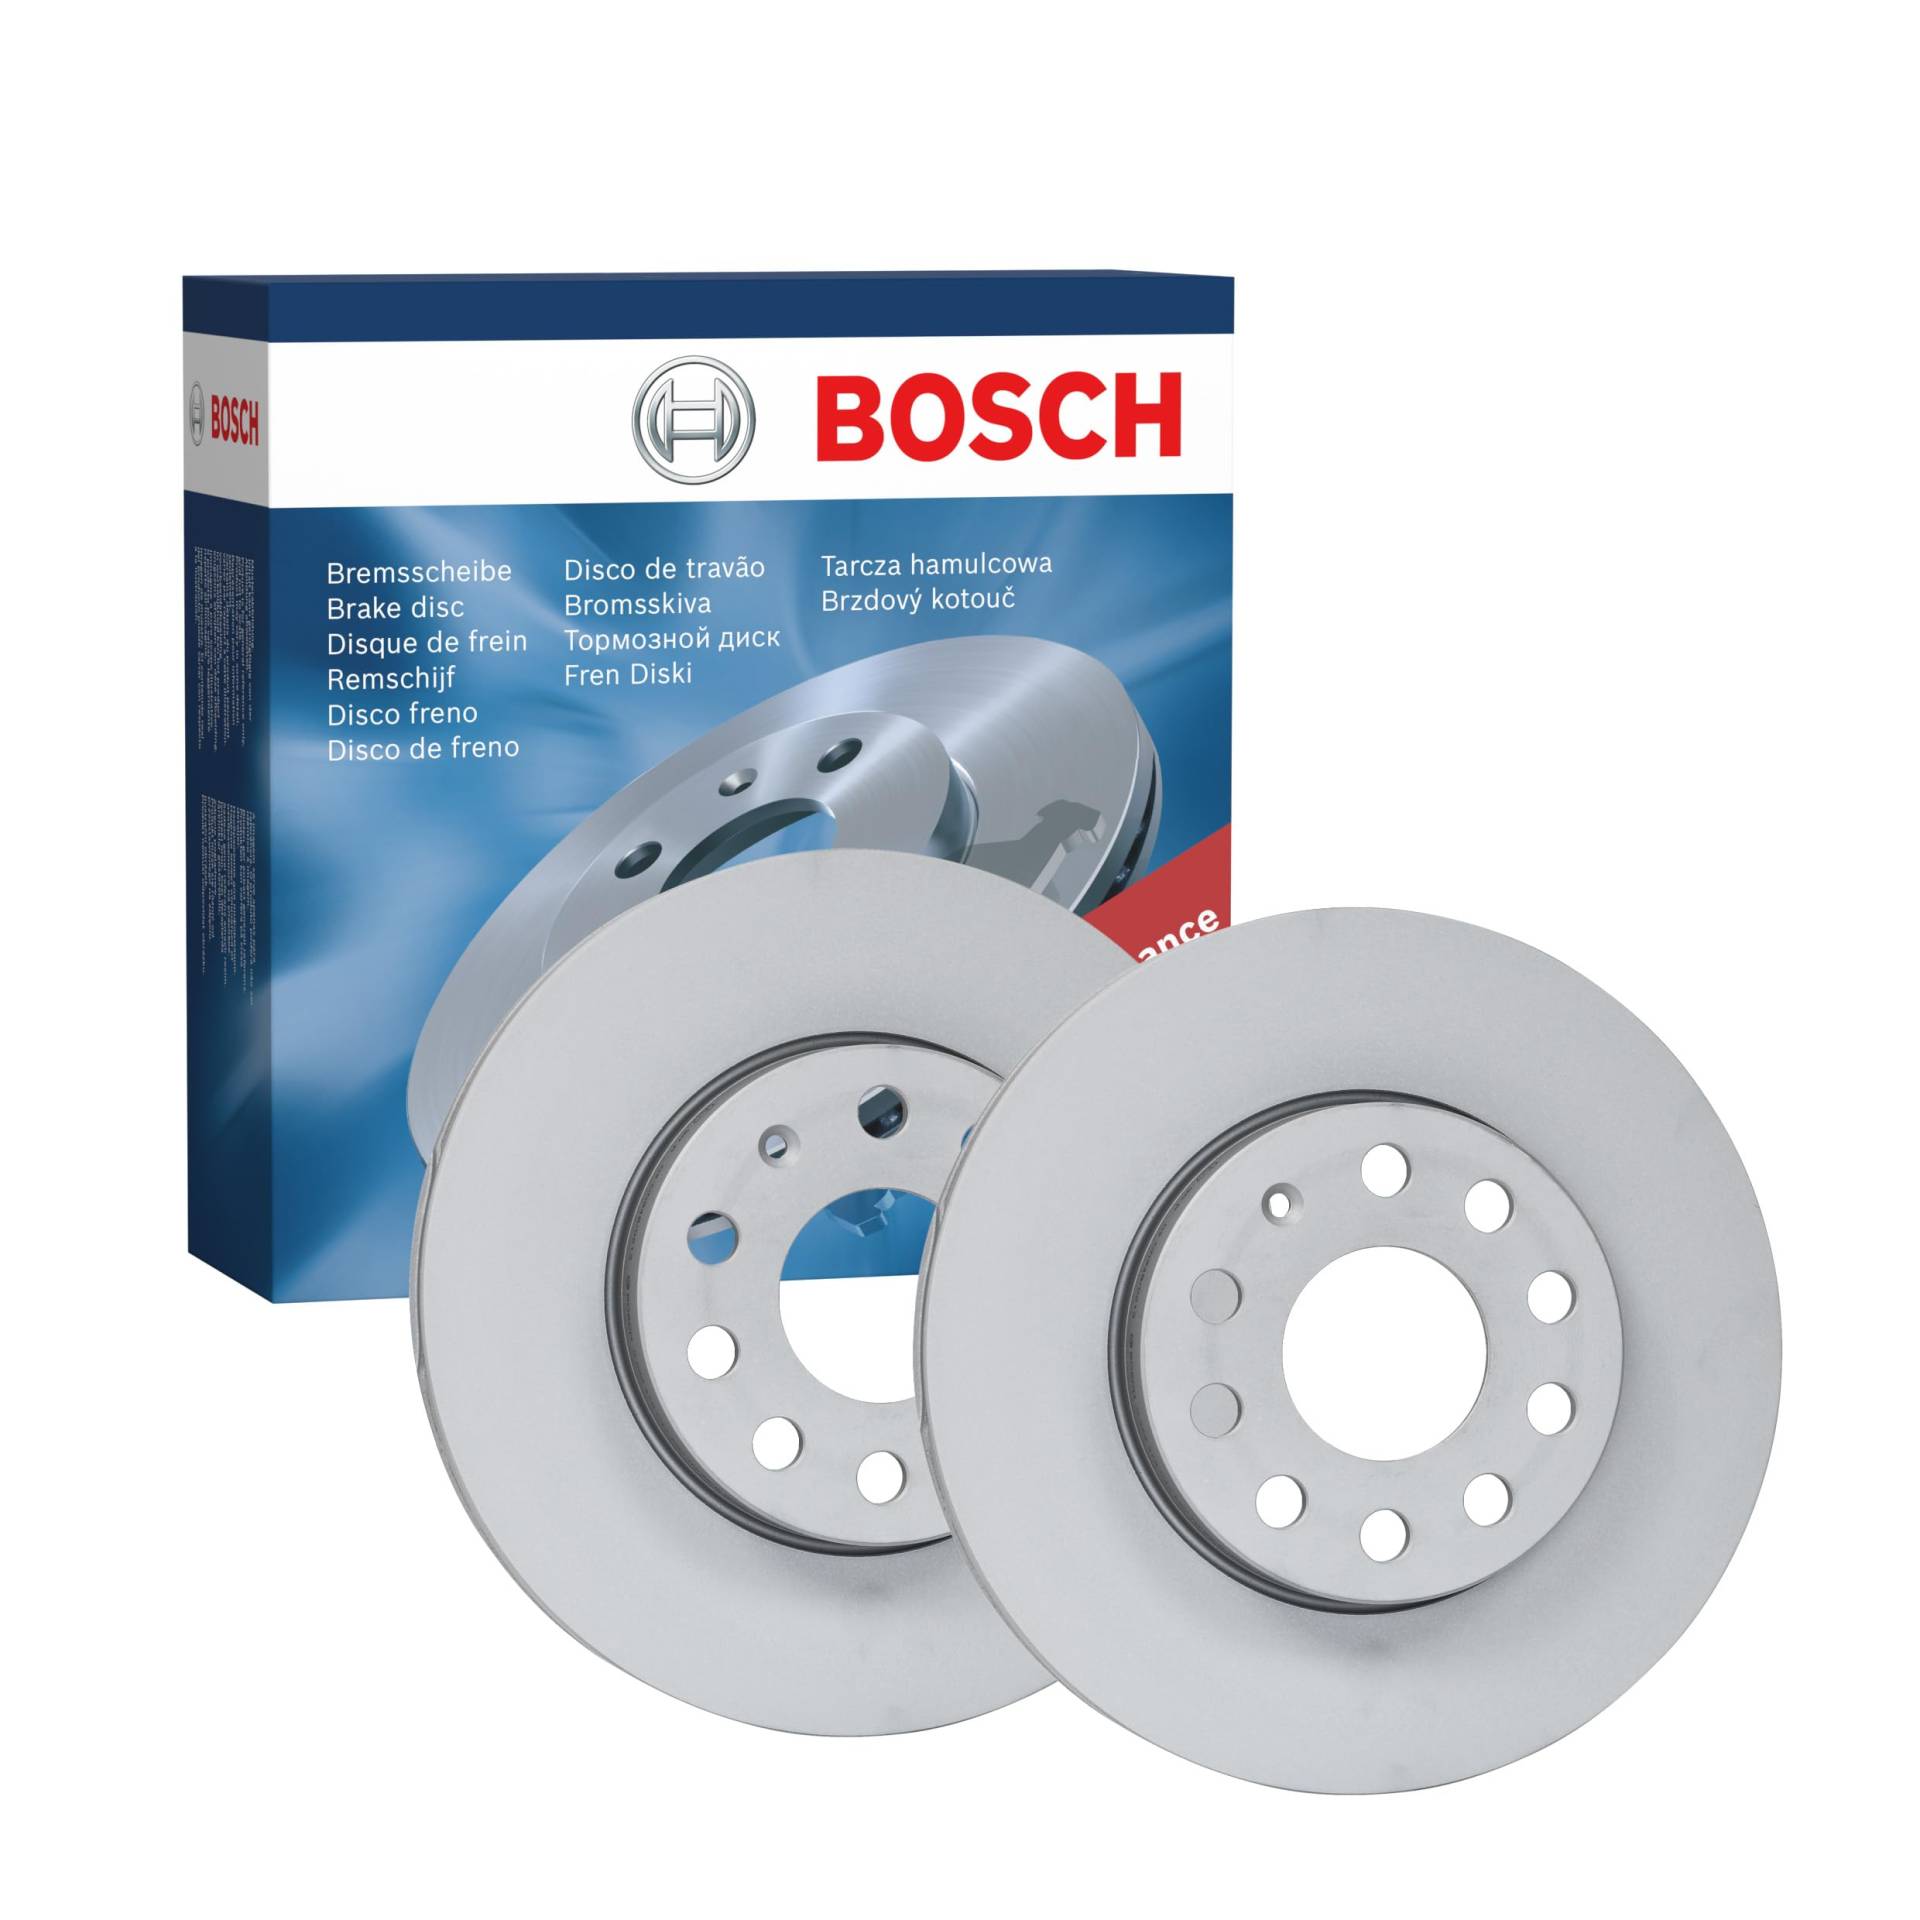 Bosch BD2186 Bremsscheiben - Vorderachse - ECE-R90 Zertifizierung - zwei Bremsscheiben pro Set von Bosch Automotive